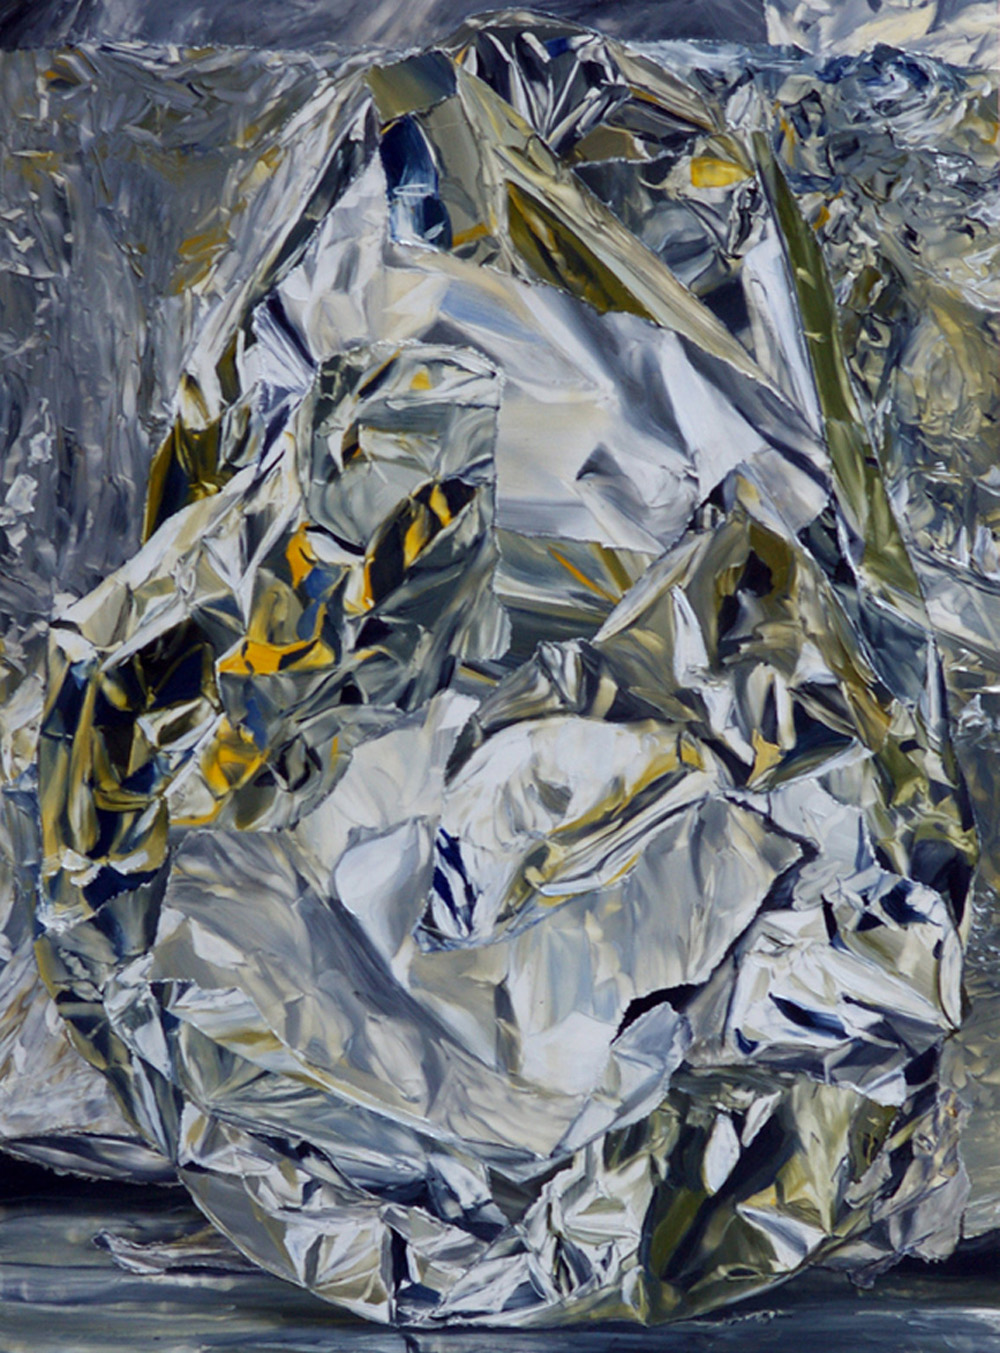 Untitled, 2010
oil on board
34.8 x 25.6 cms
13 3/4 x 10 1/8 ins. William Daniels